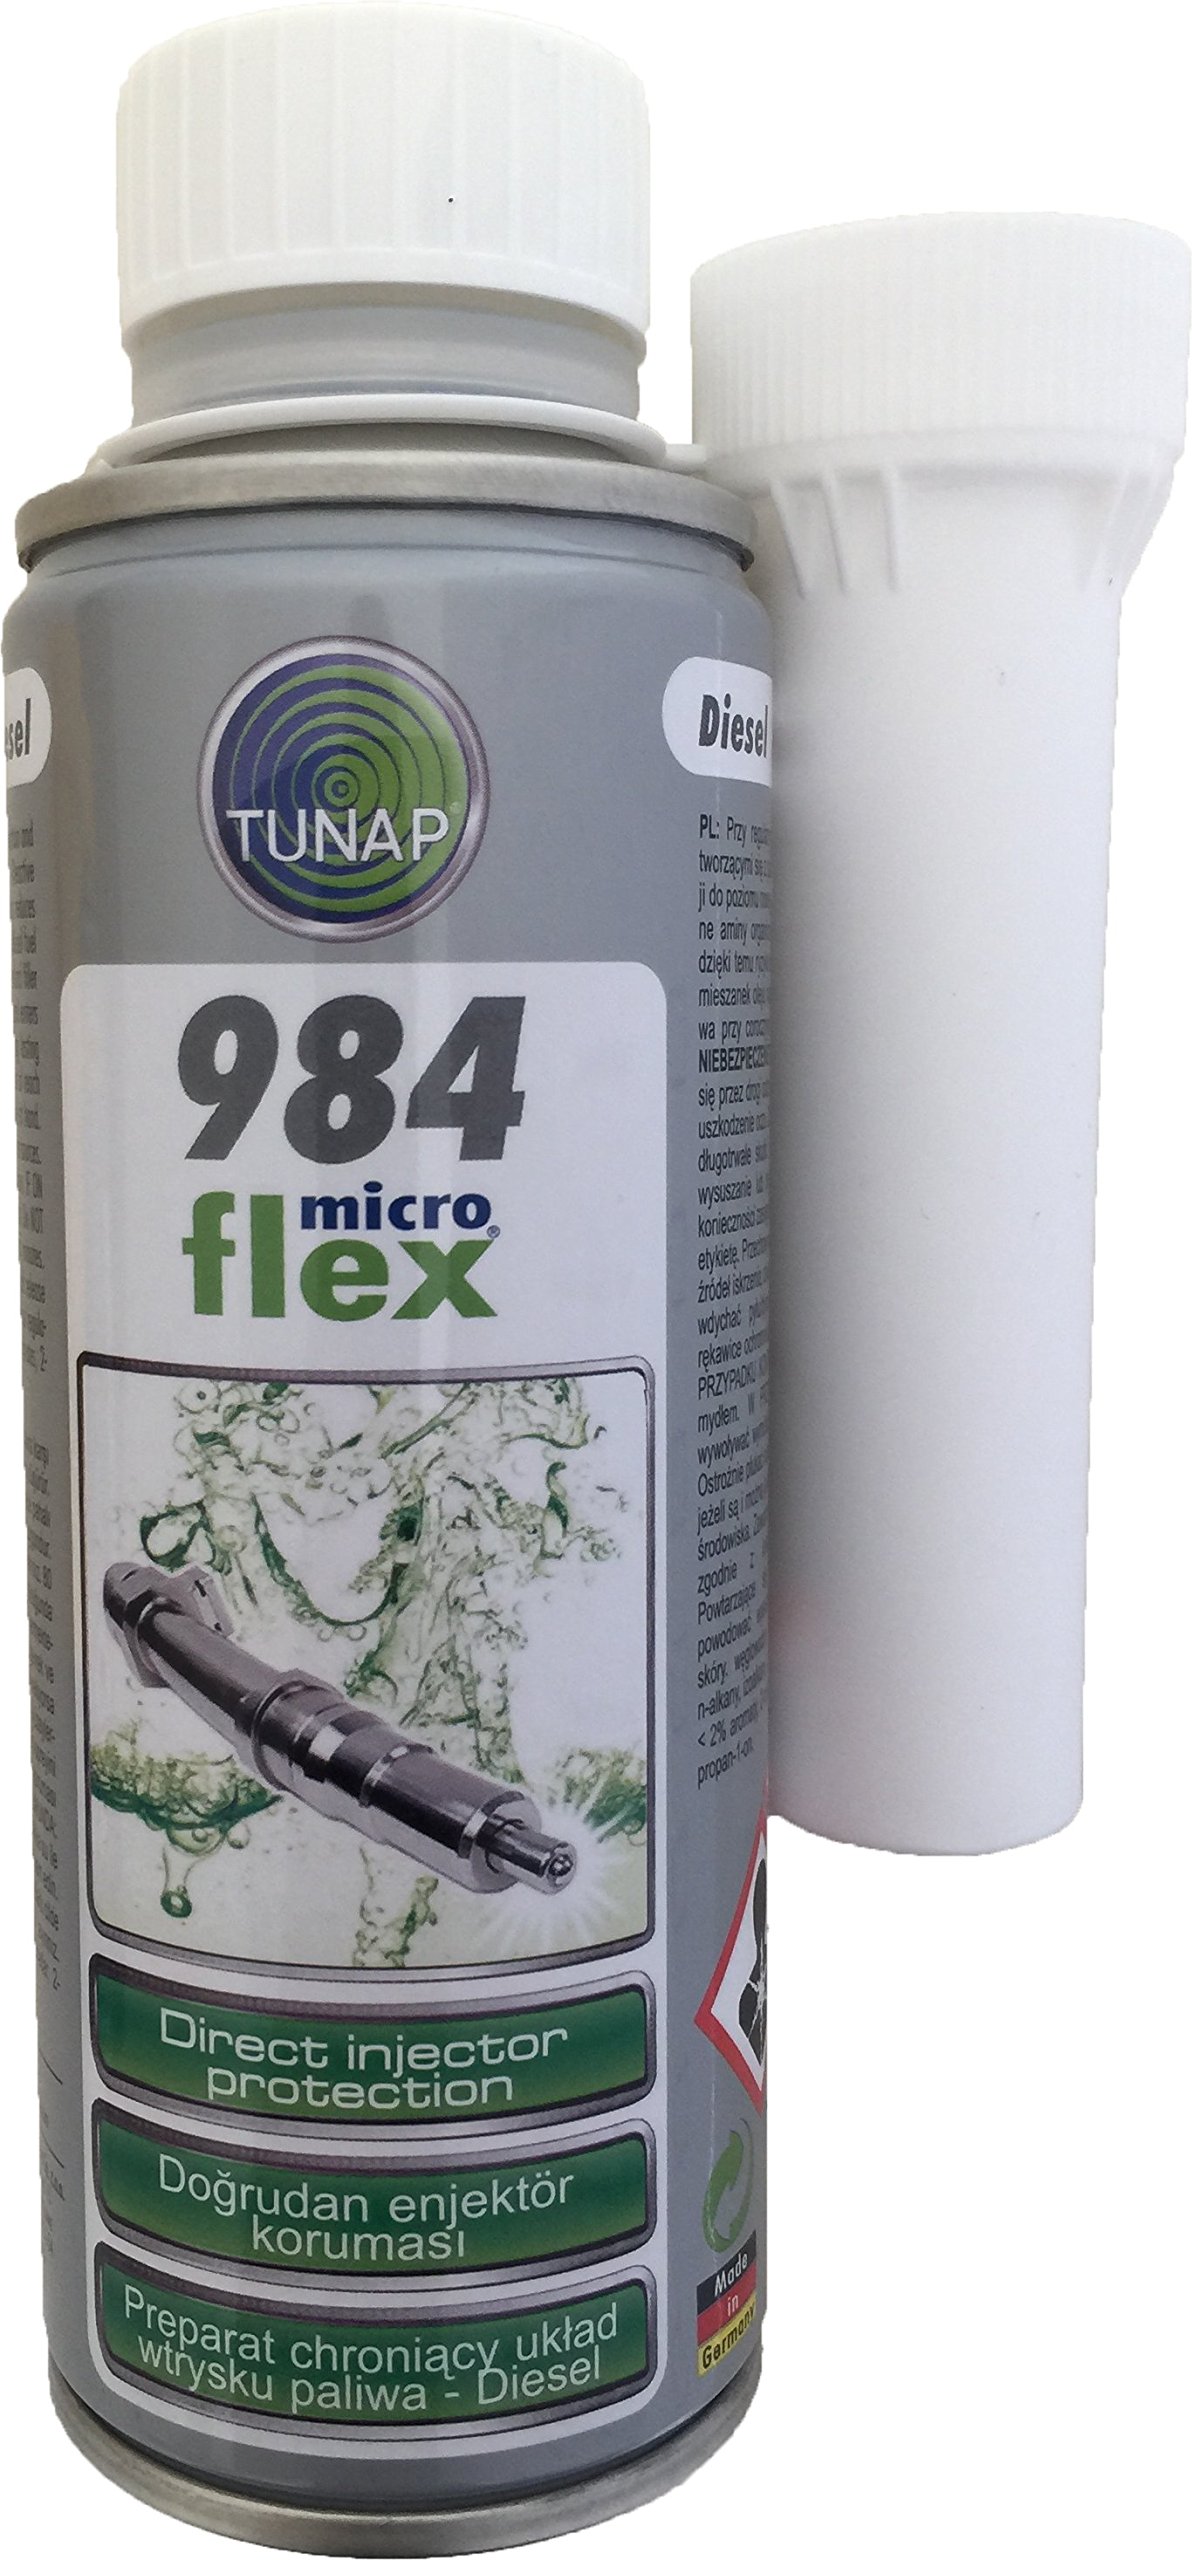 TUNAP Microflex 984 Schutz für Diesel-Injektor von TUNAP